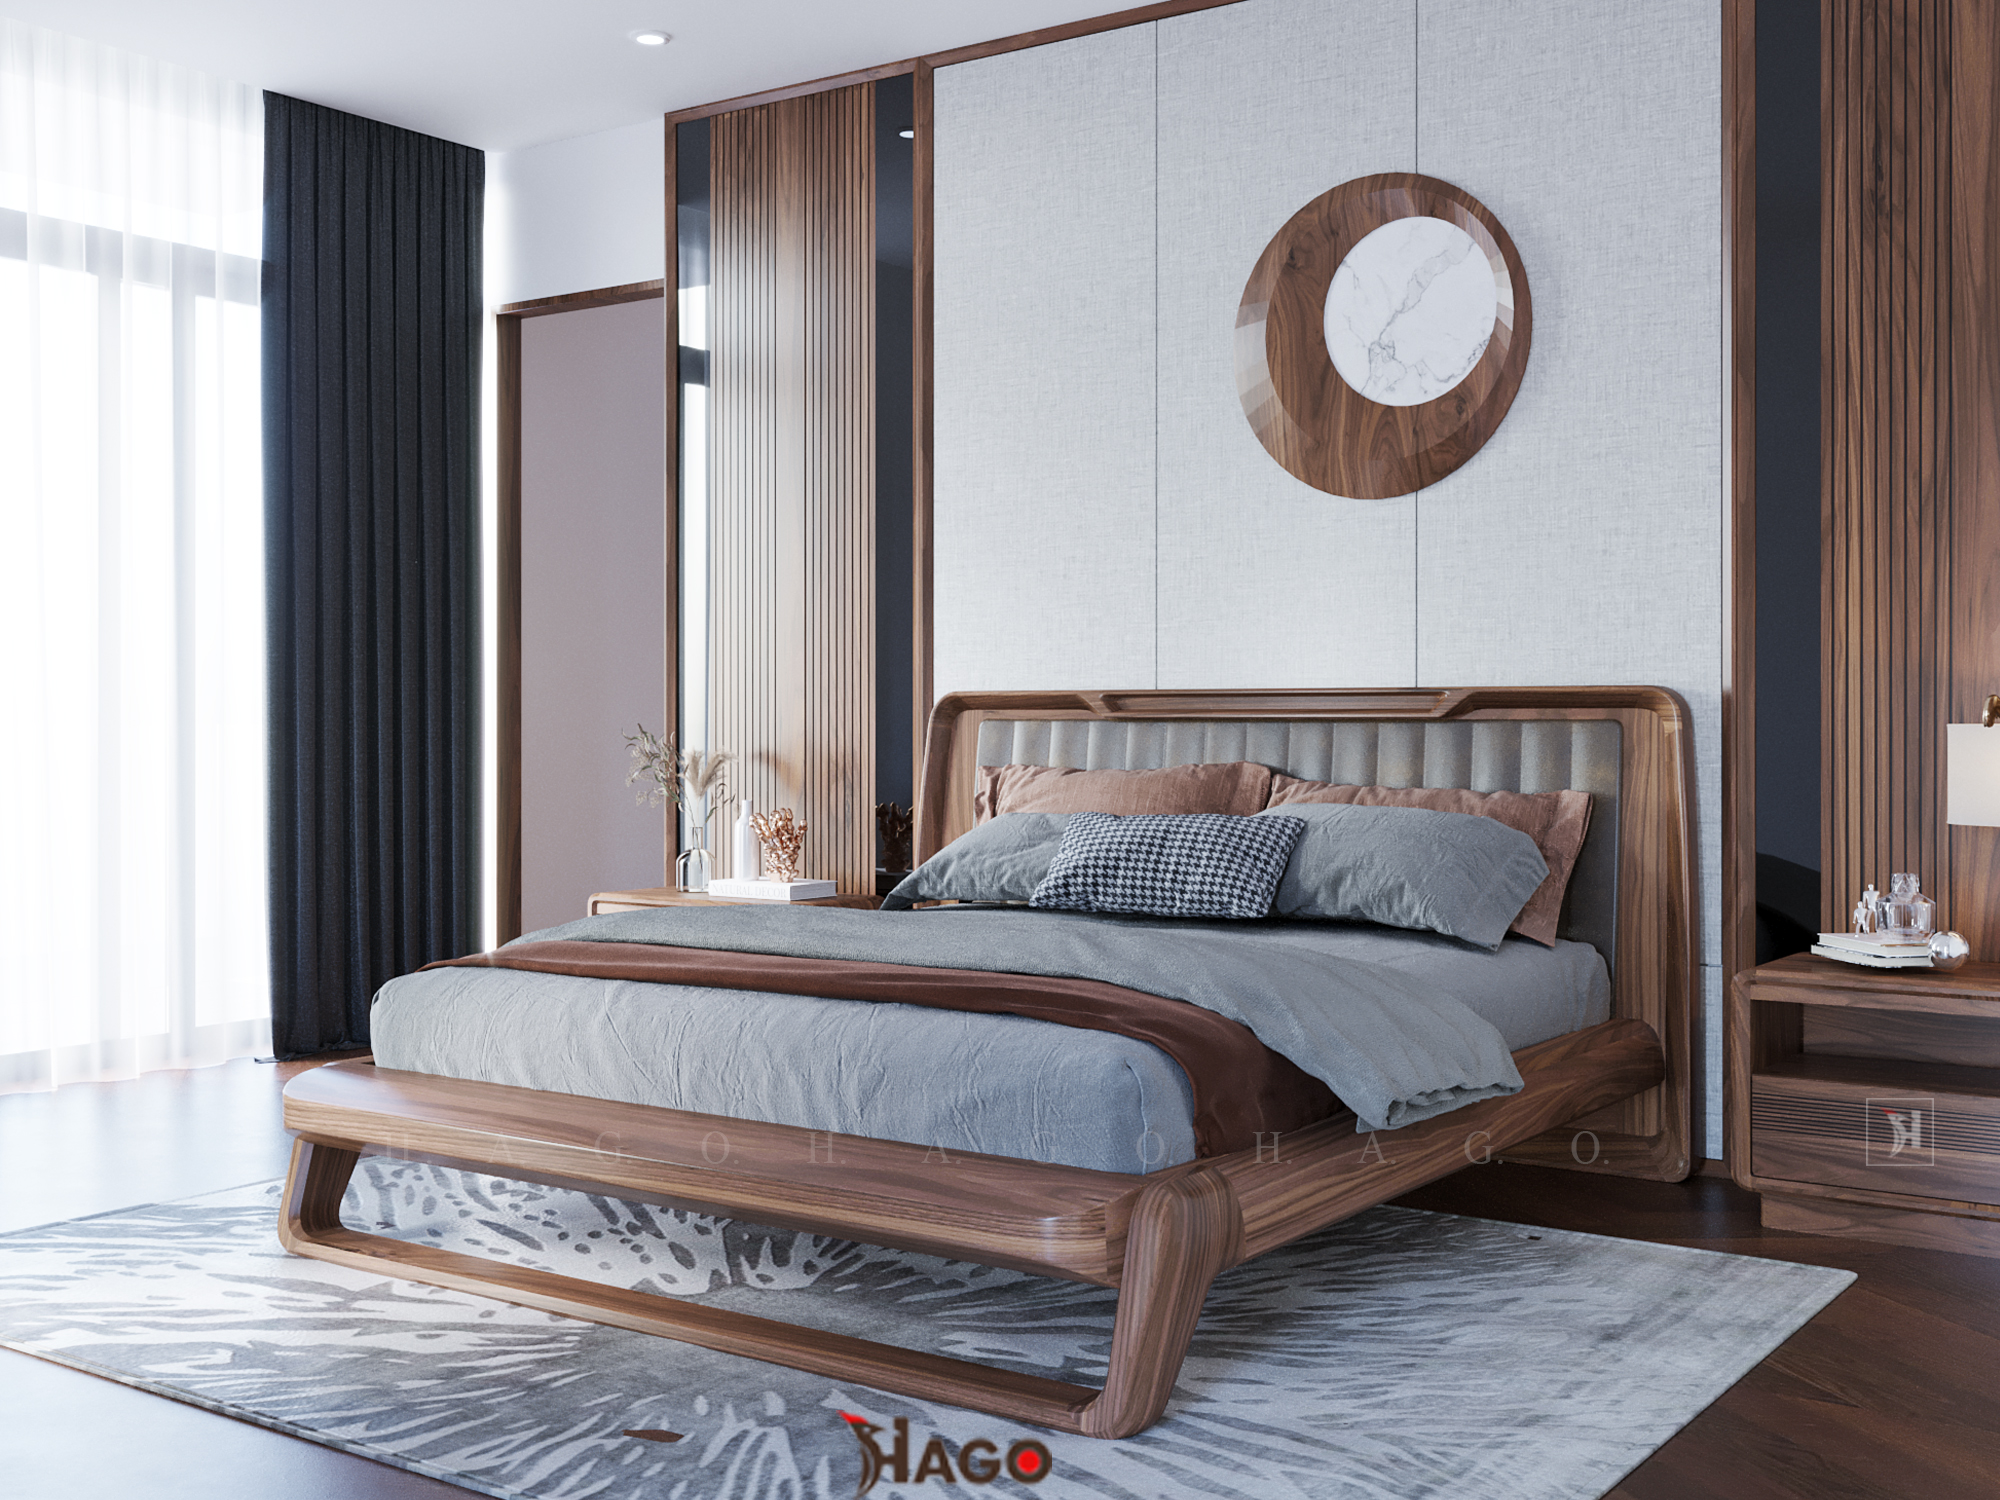 Giường ngủ hiện đại, giường ngủ hiện đại gỗ óc chó, giường ngủ gỗ sồi